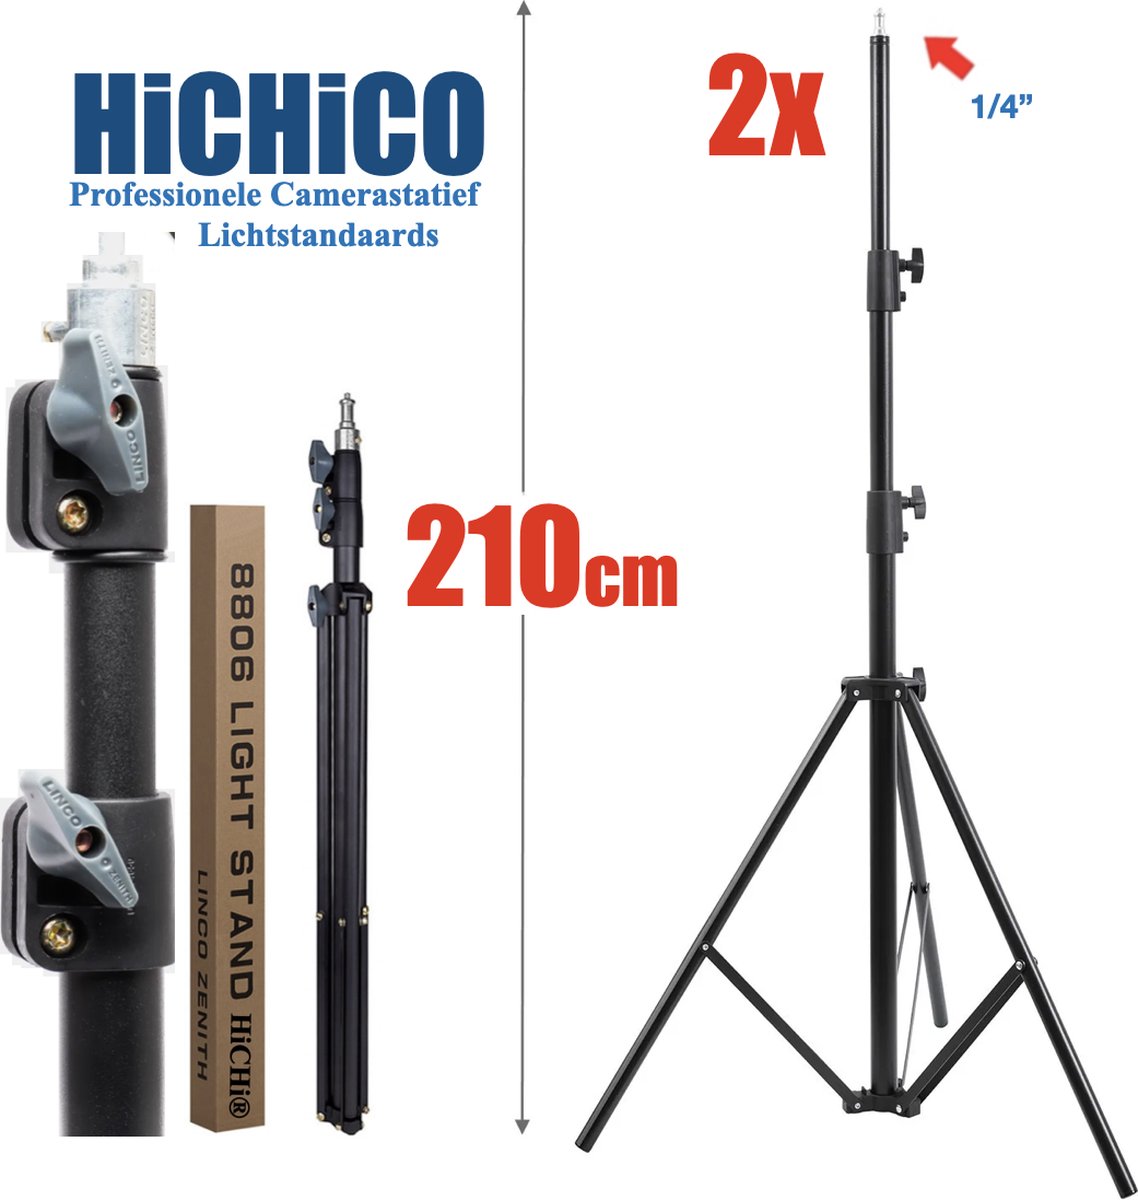 HiCHiCO® 2 stuks lichtstandaards - metallic instelbare 92-200 cm donkergrijs duty ondersteuningsstandaard voor fotostudio softbox, studioscherm, flitslicht, Spiegelreflexcamera reflector en andere apparatuur - HiCHiCO